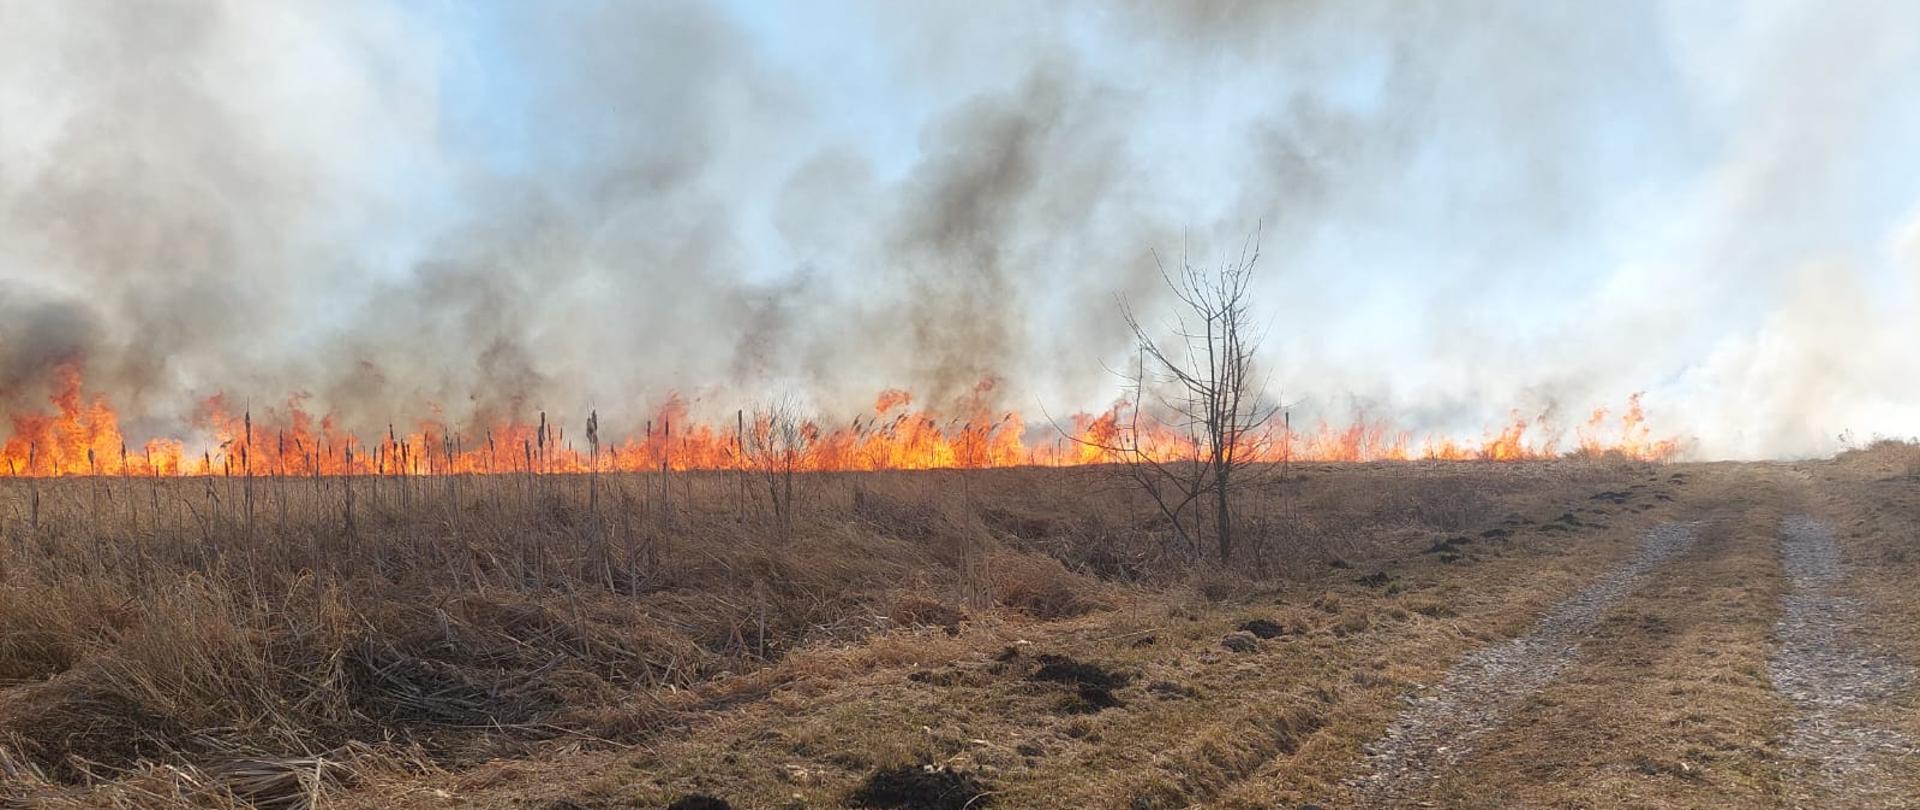 Zdjęcie przedstawia ścianę ognia palącej się suchej trawy na nieużytkach rolnych.